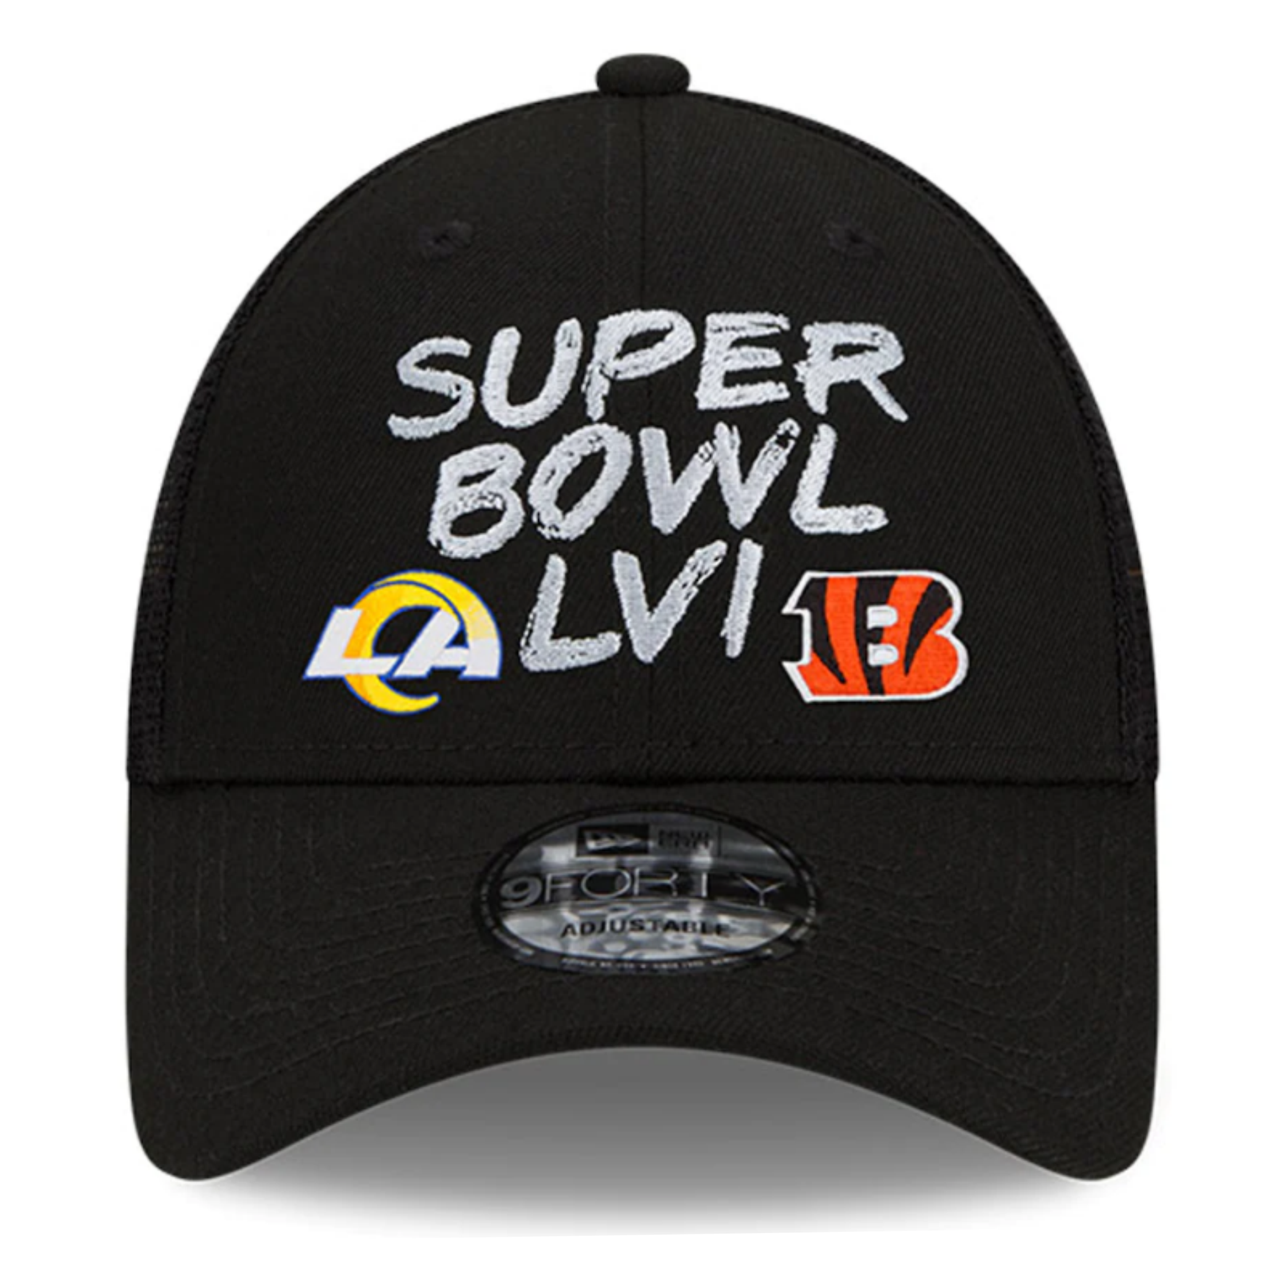 Los Angeles Rams Hat Black New Era Super Bowl LVI NFL Football Snapback Cap